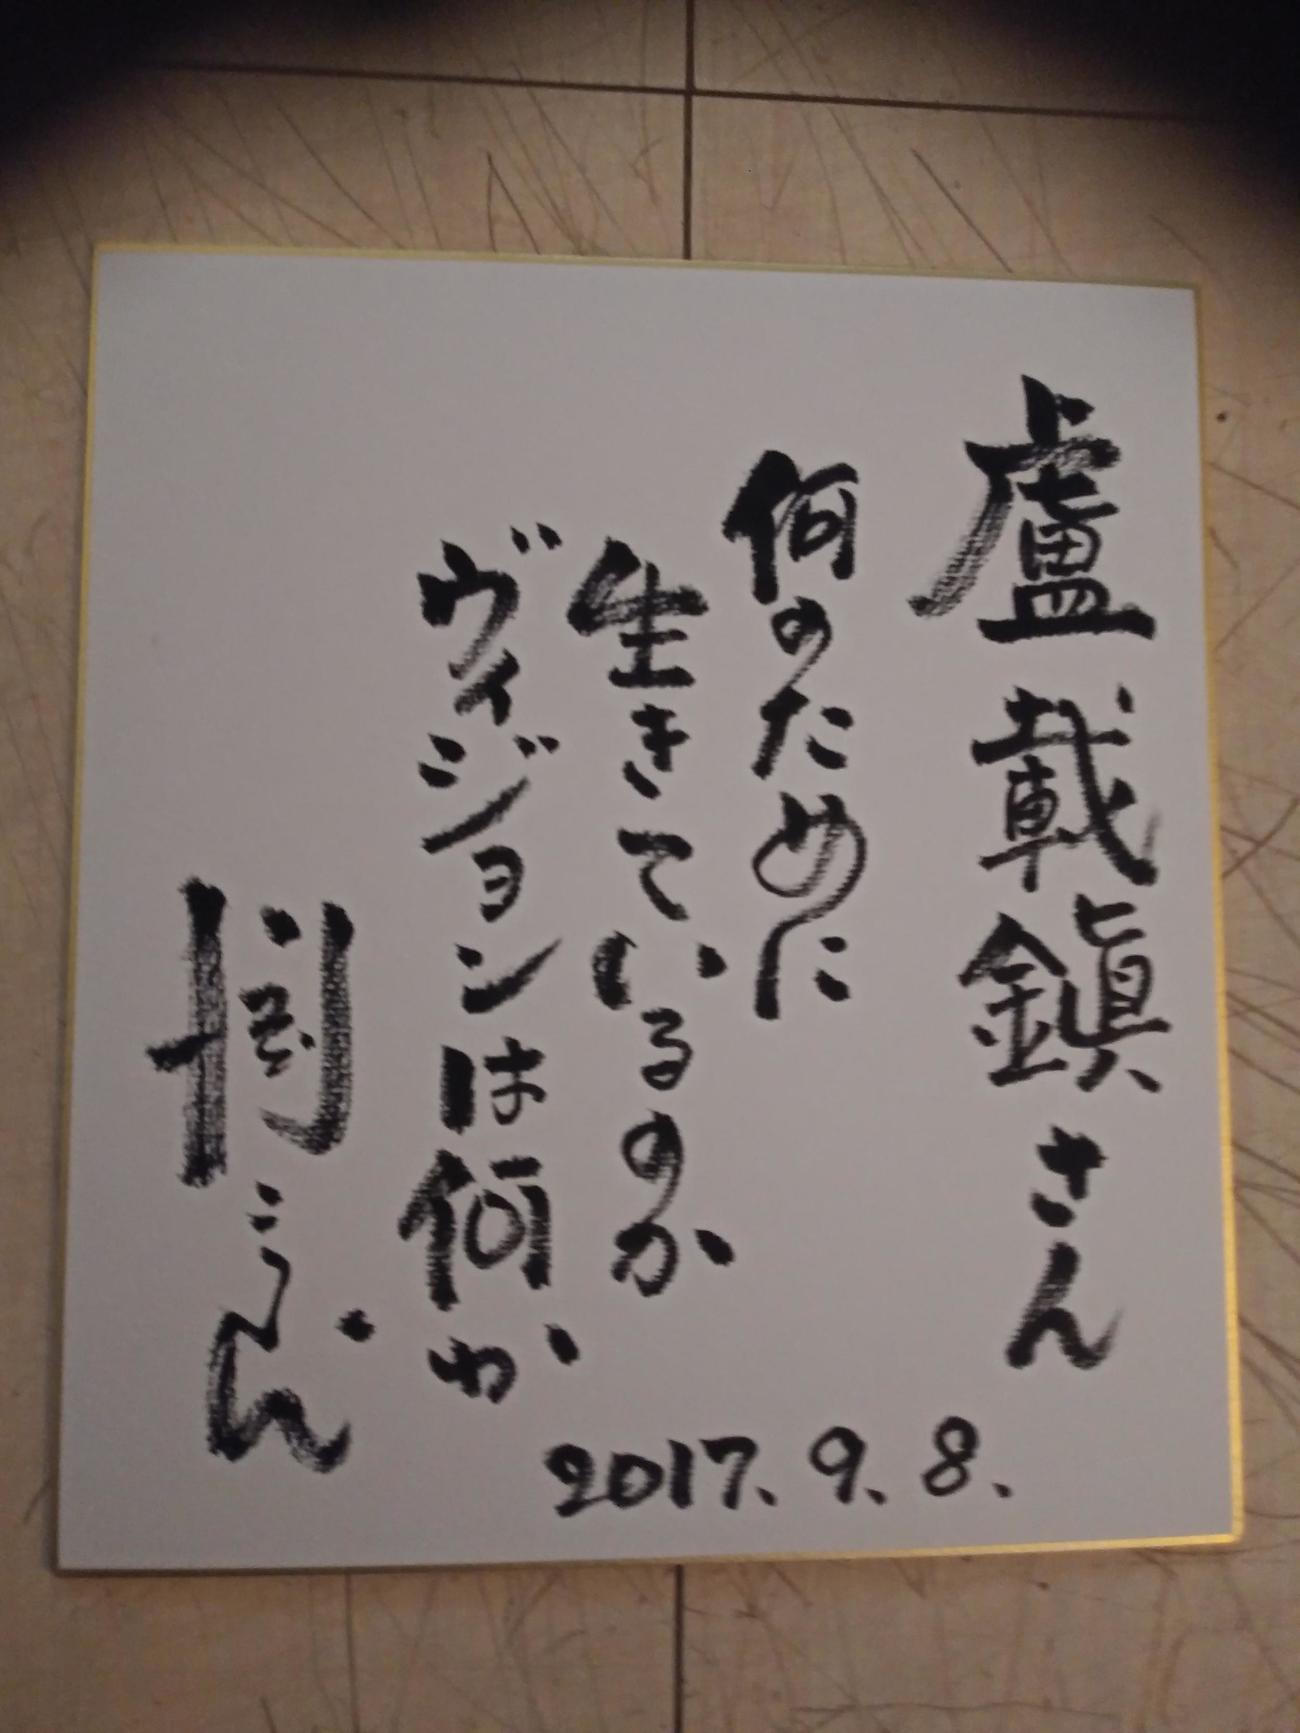 川淵三郎氏が私の誕生日に書いてくれた色紙